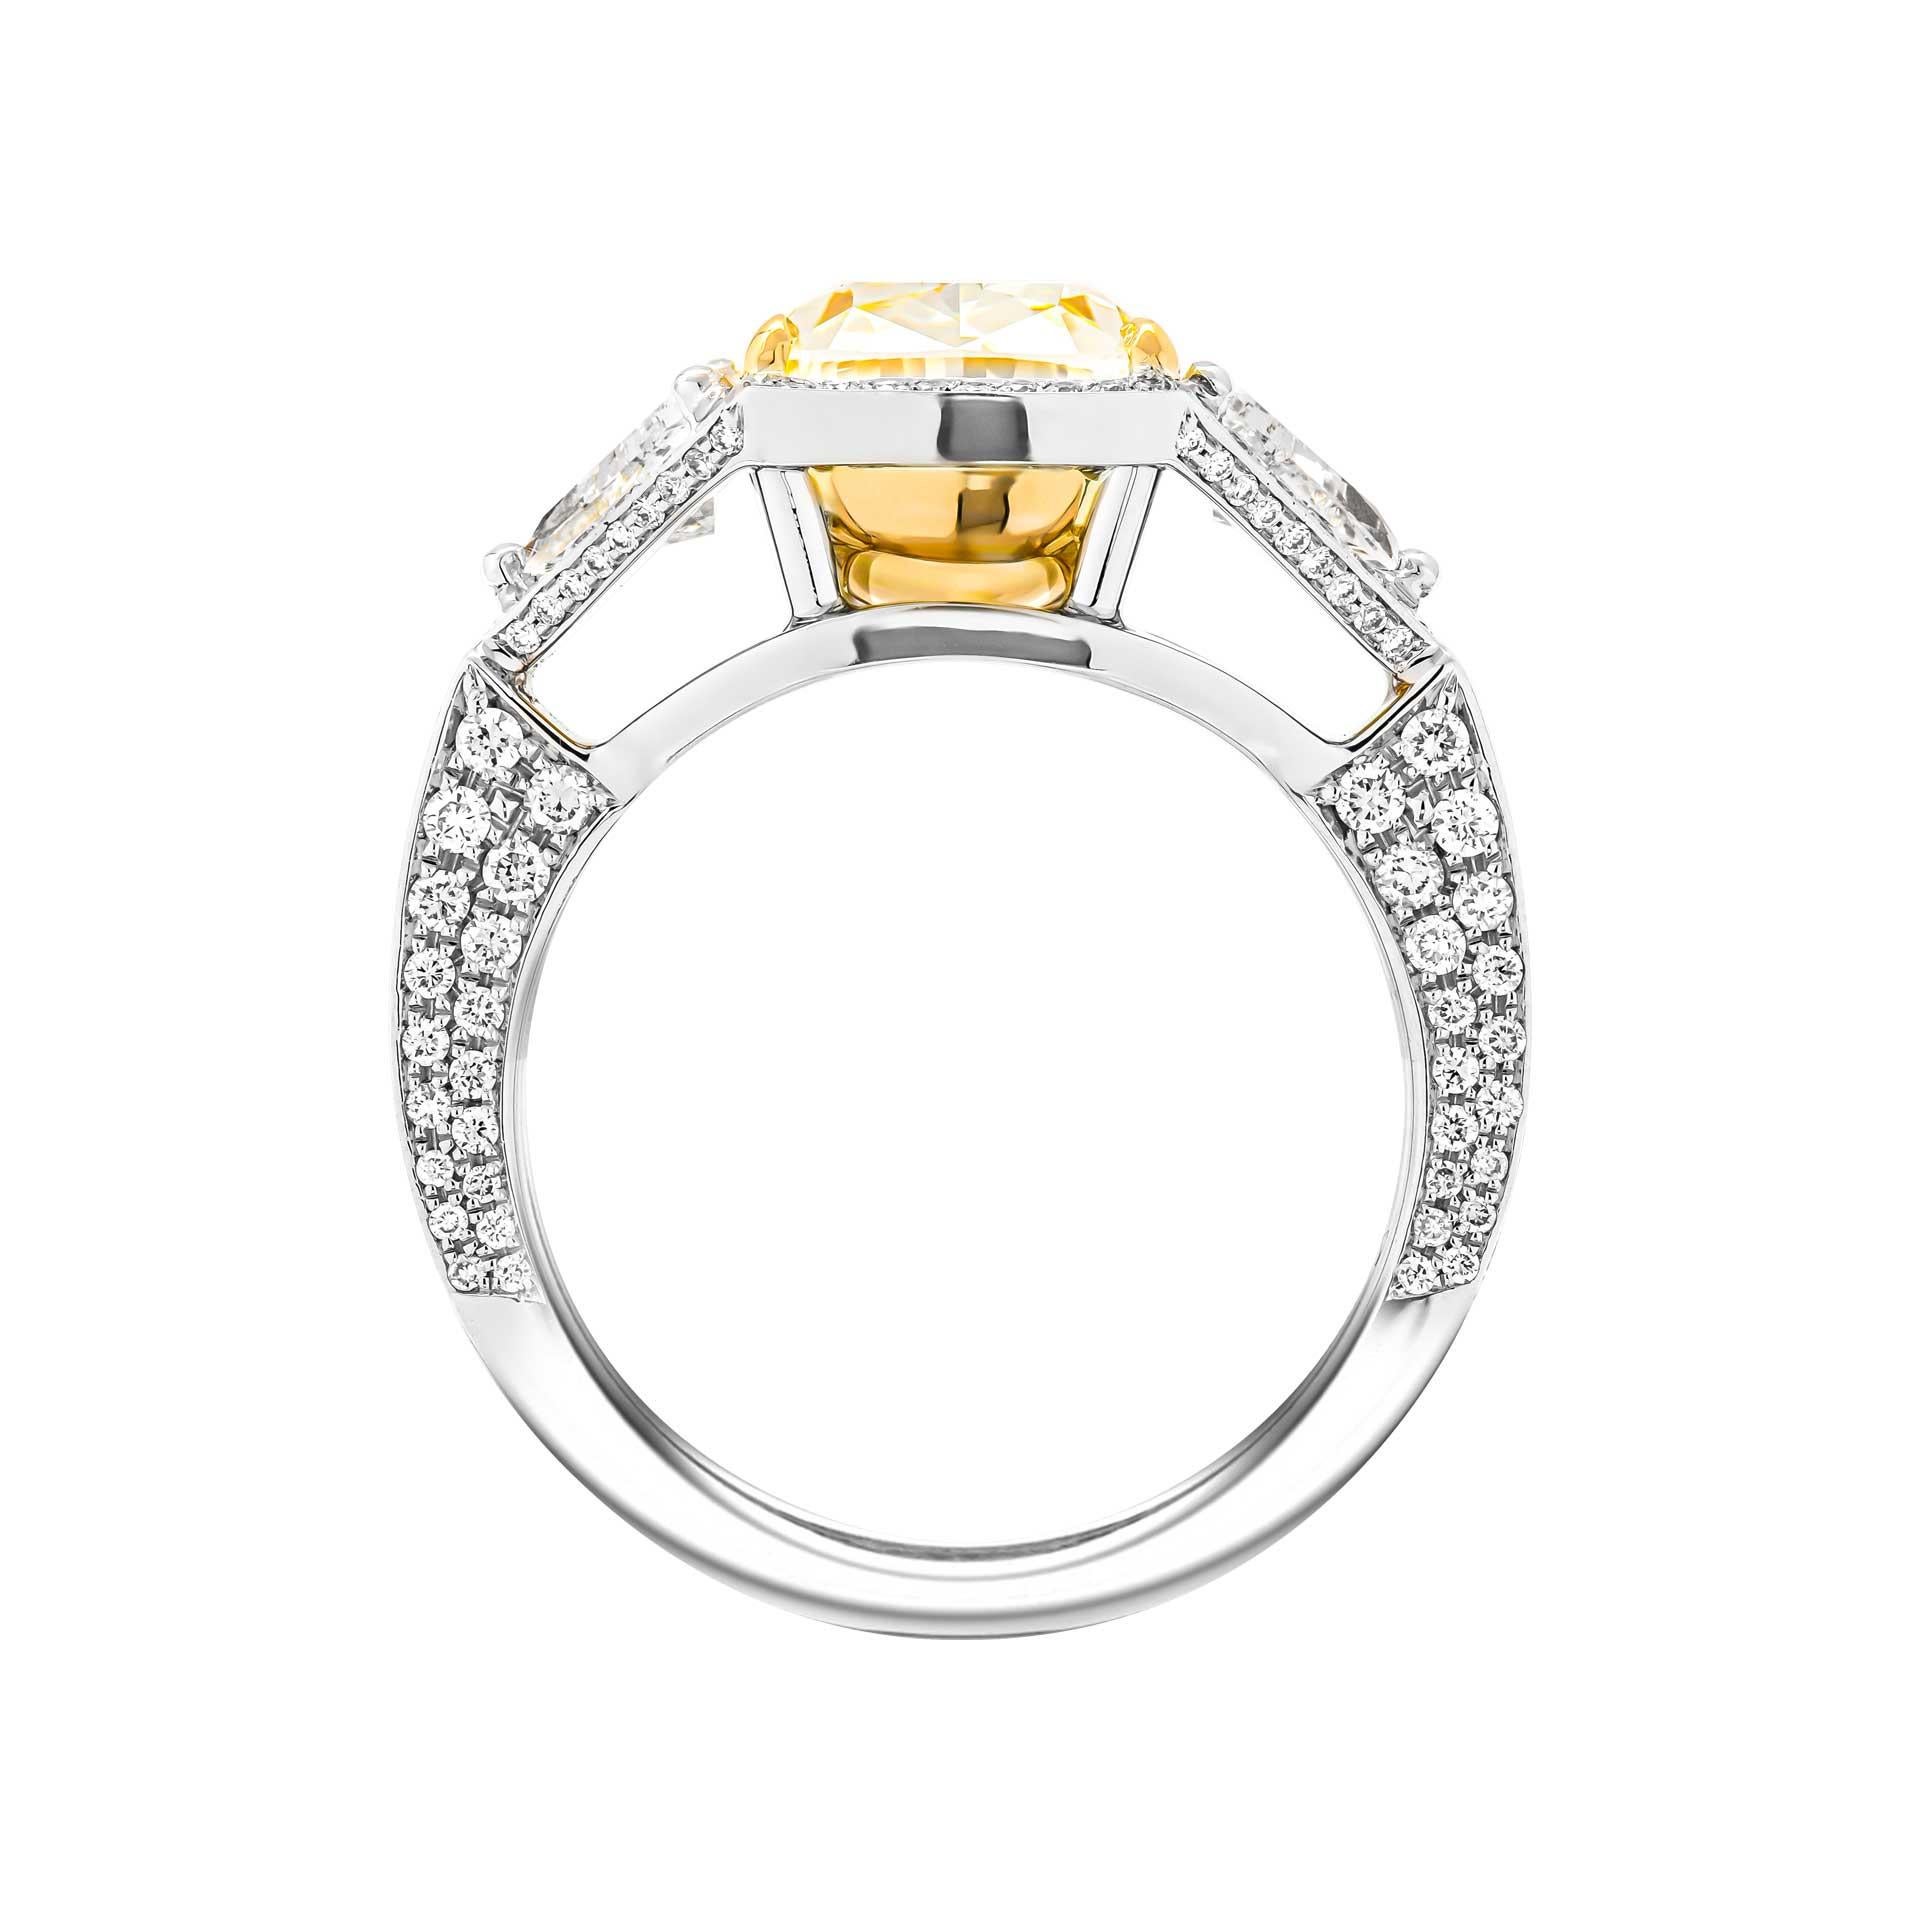 3 stone ring design for female